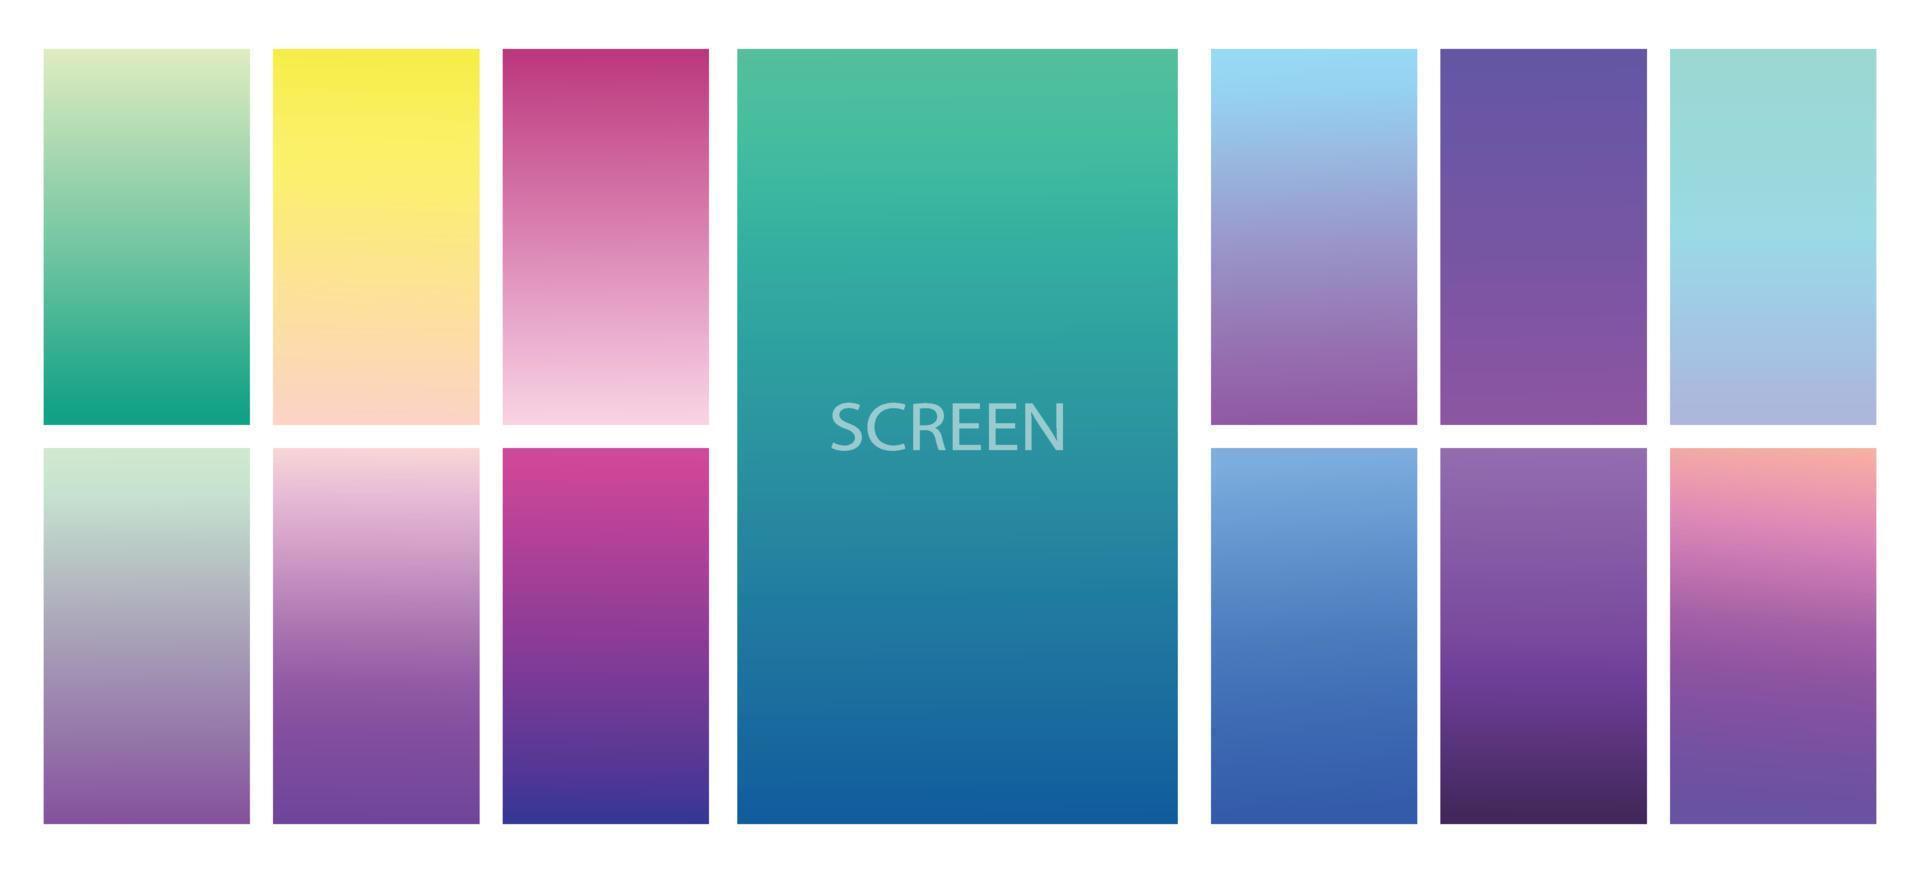 moderner bildschirmvektorverlaufshintergrund. lebendiger, glatter farbverlauf für mobile apps, ui, ux design. heller, weicher Farbverlauf für Apps. vektor